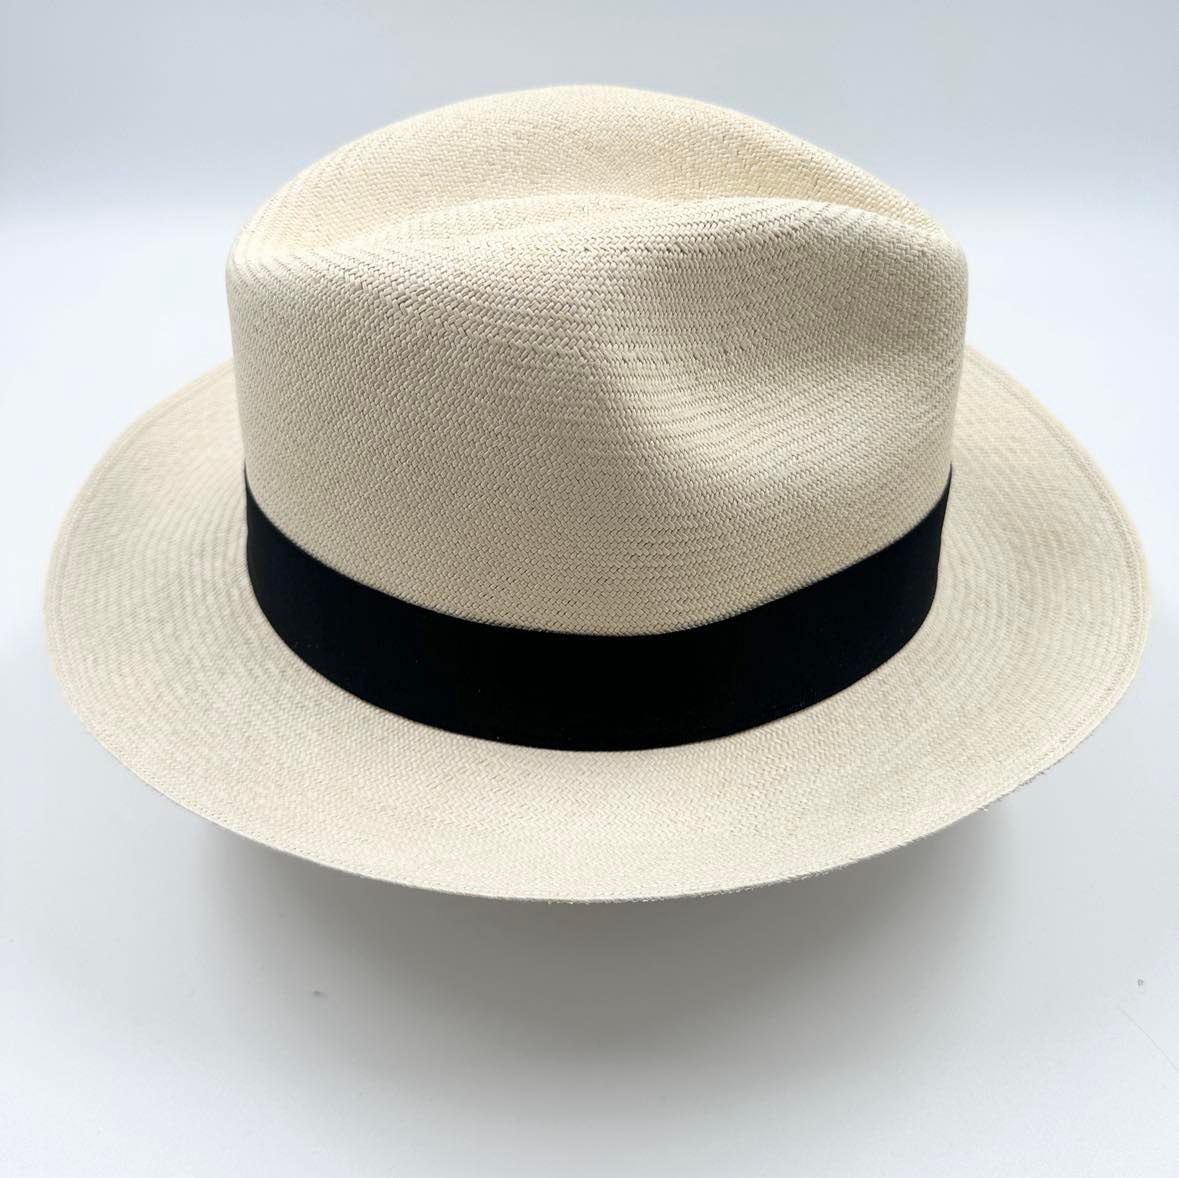 Ægte Montecristi Fedora Panama Hat med en kvalitet på 17-18 fletning pr. inch - håndflettet for en unik hat - ingen hatte er ens